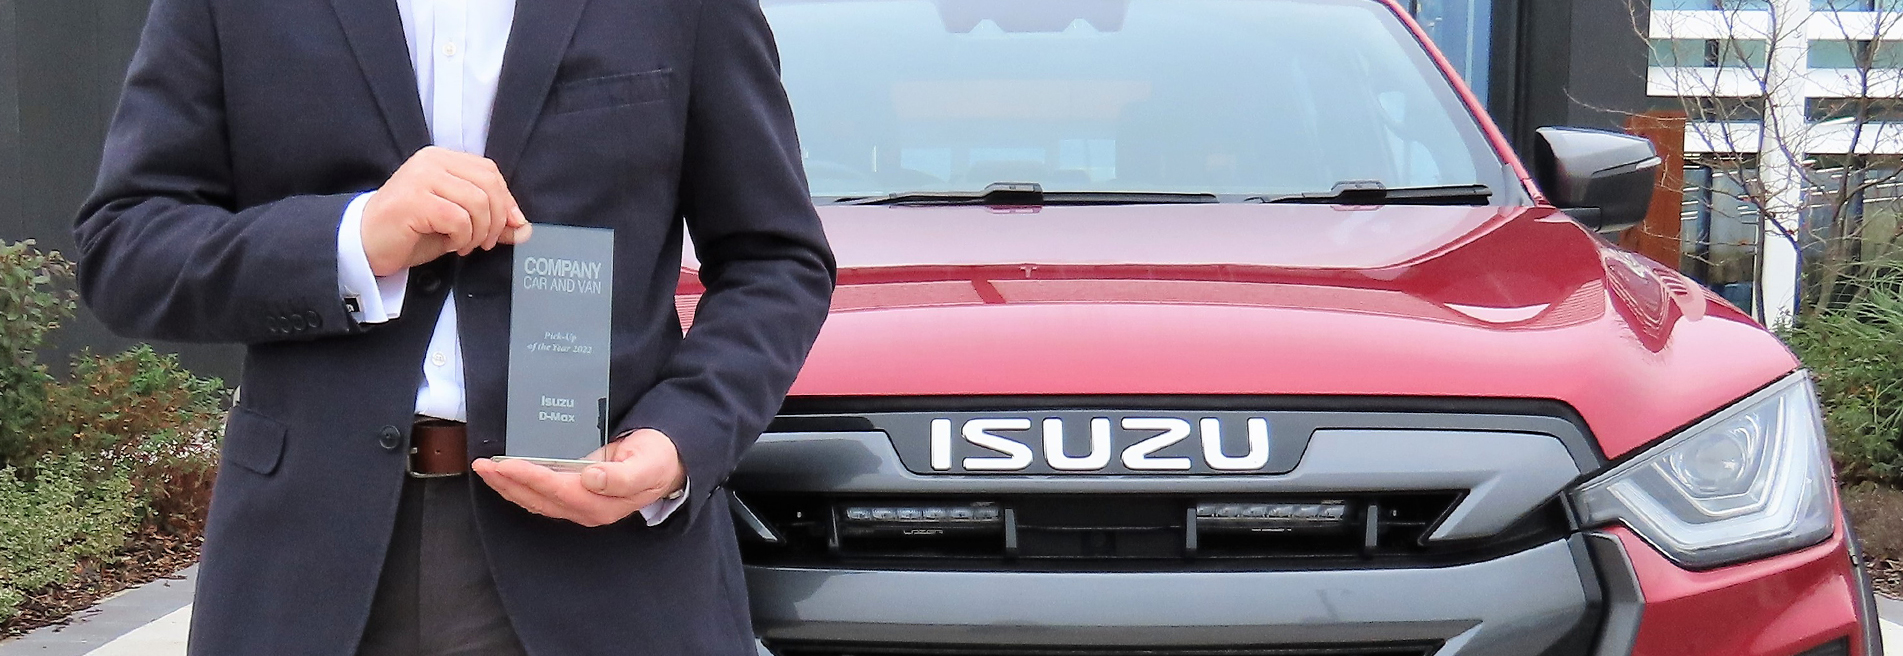 Isusu Company Car&Van Award